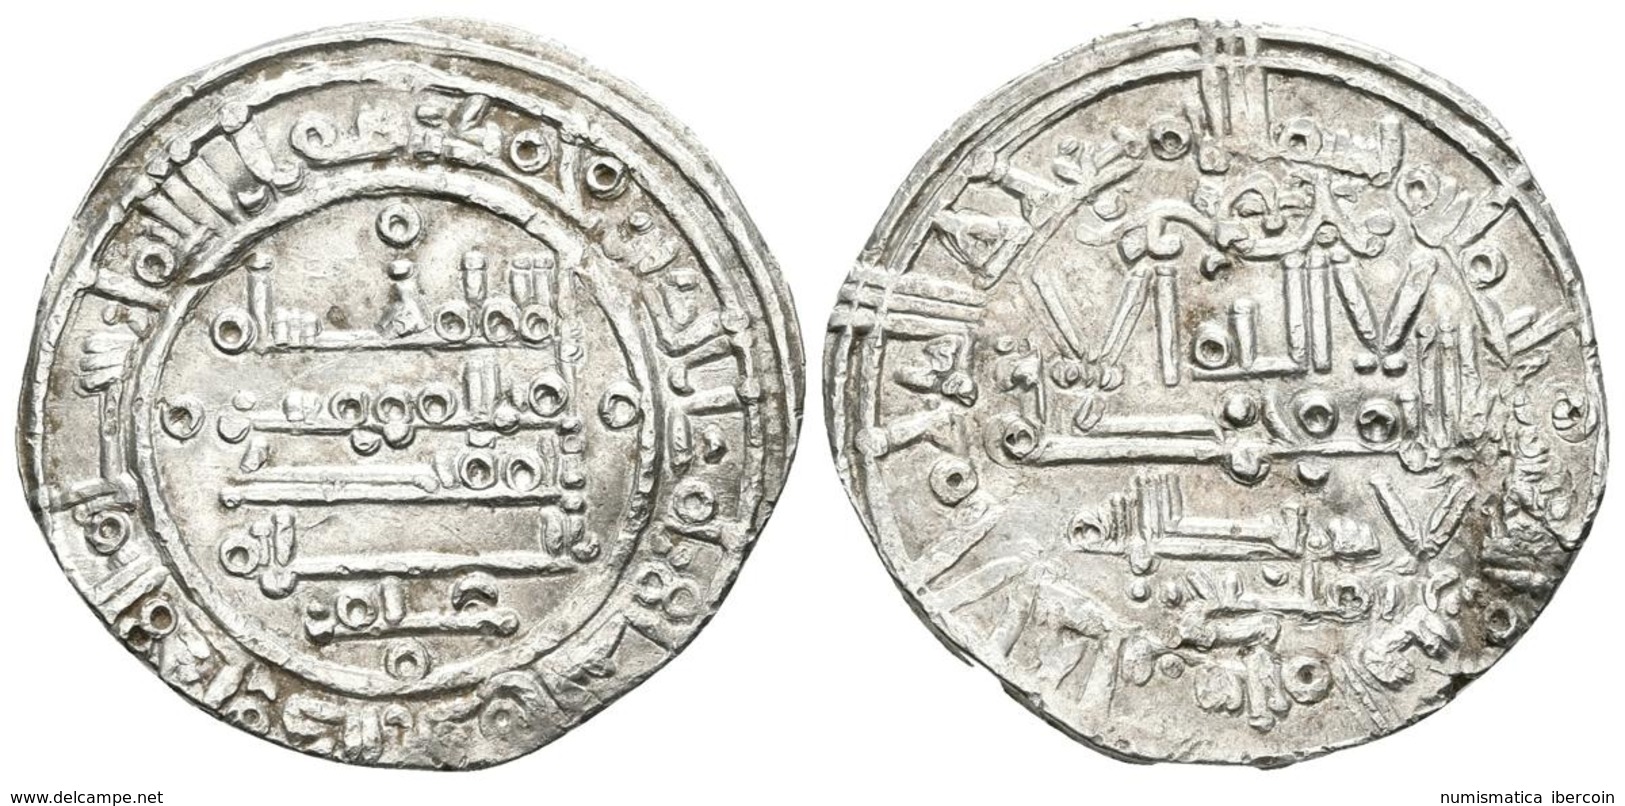 CALIFATO DE CORDOBA. Hisham II. Dirham. 392H. Al-Andalus. Citando Tamliy En La IA Y 'Amir En La IIA. V.573; Miles 322 Cc - Islámicas